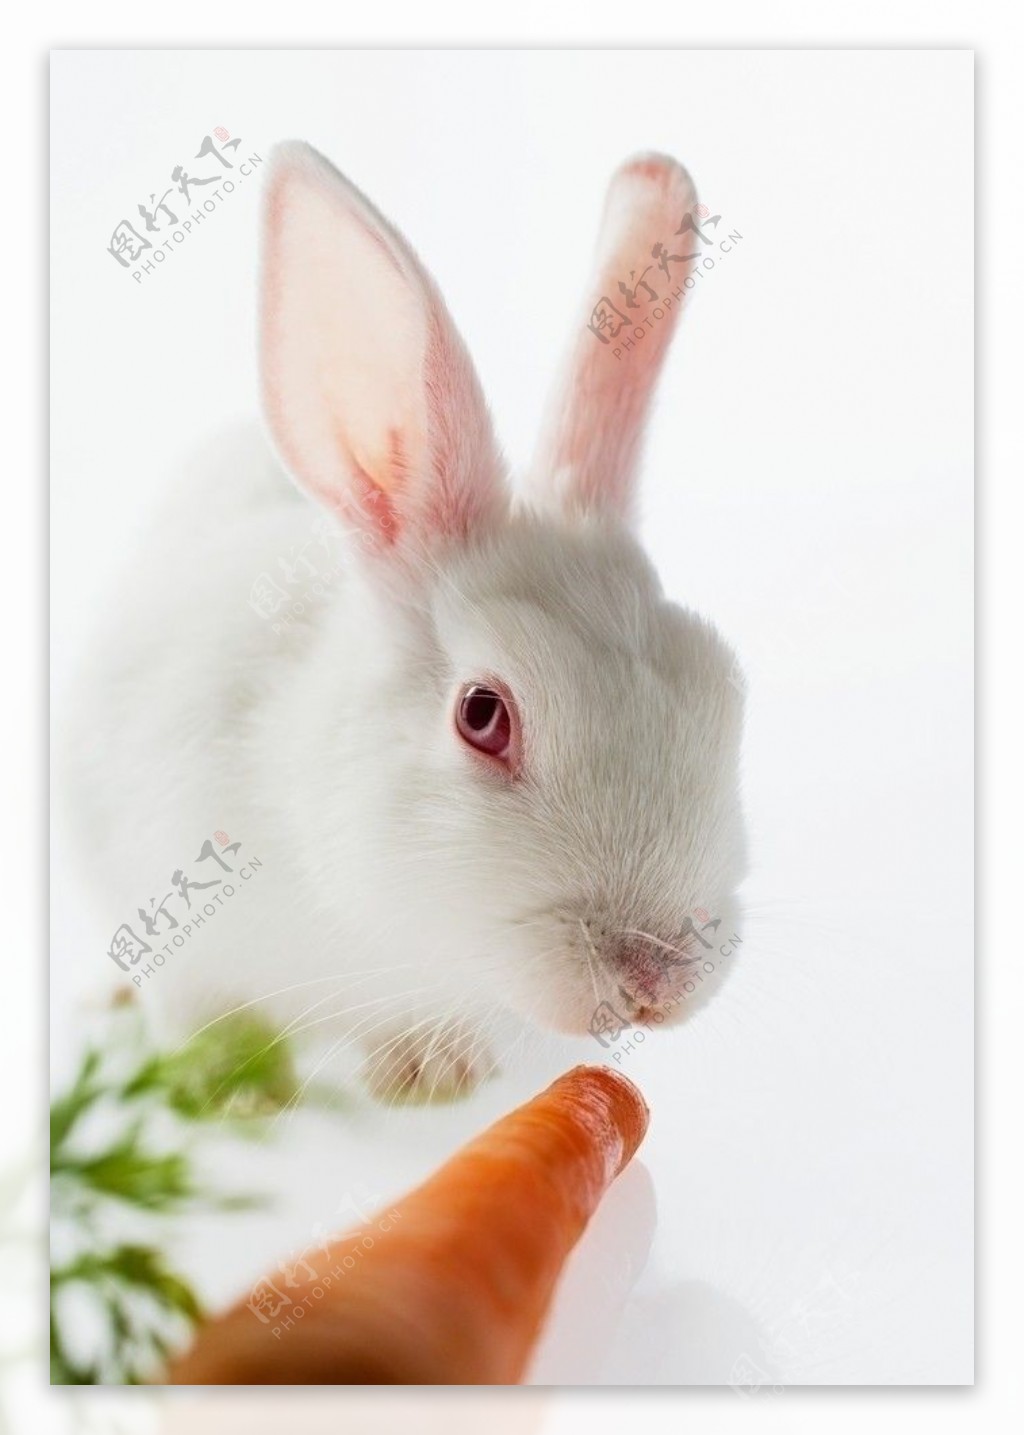 吃萝卜的小白兔图片